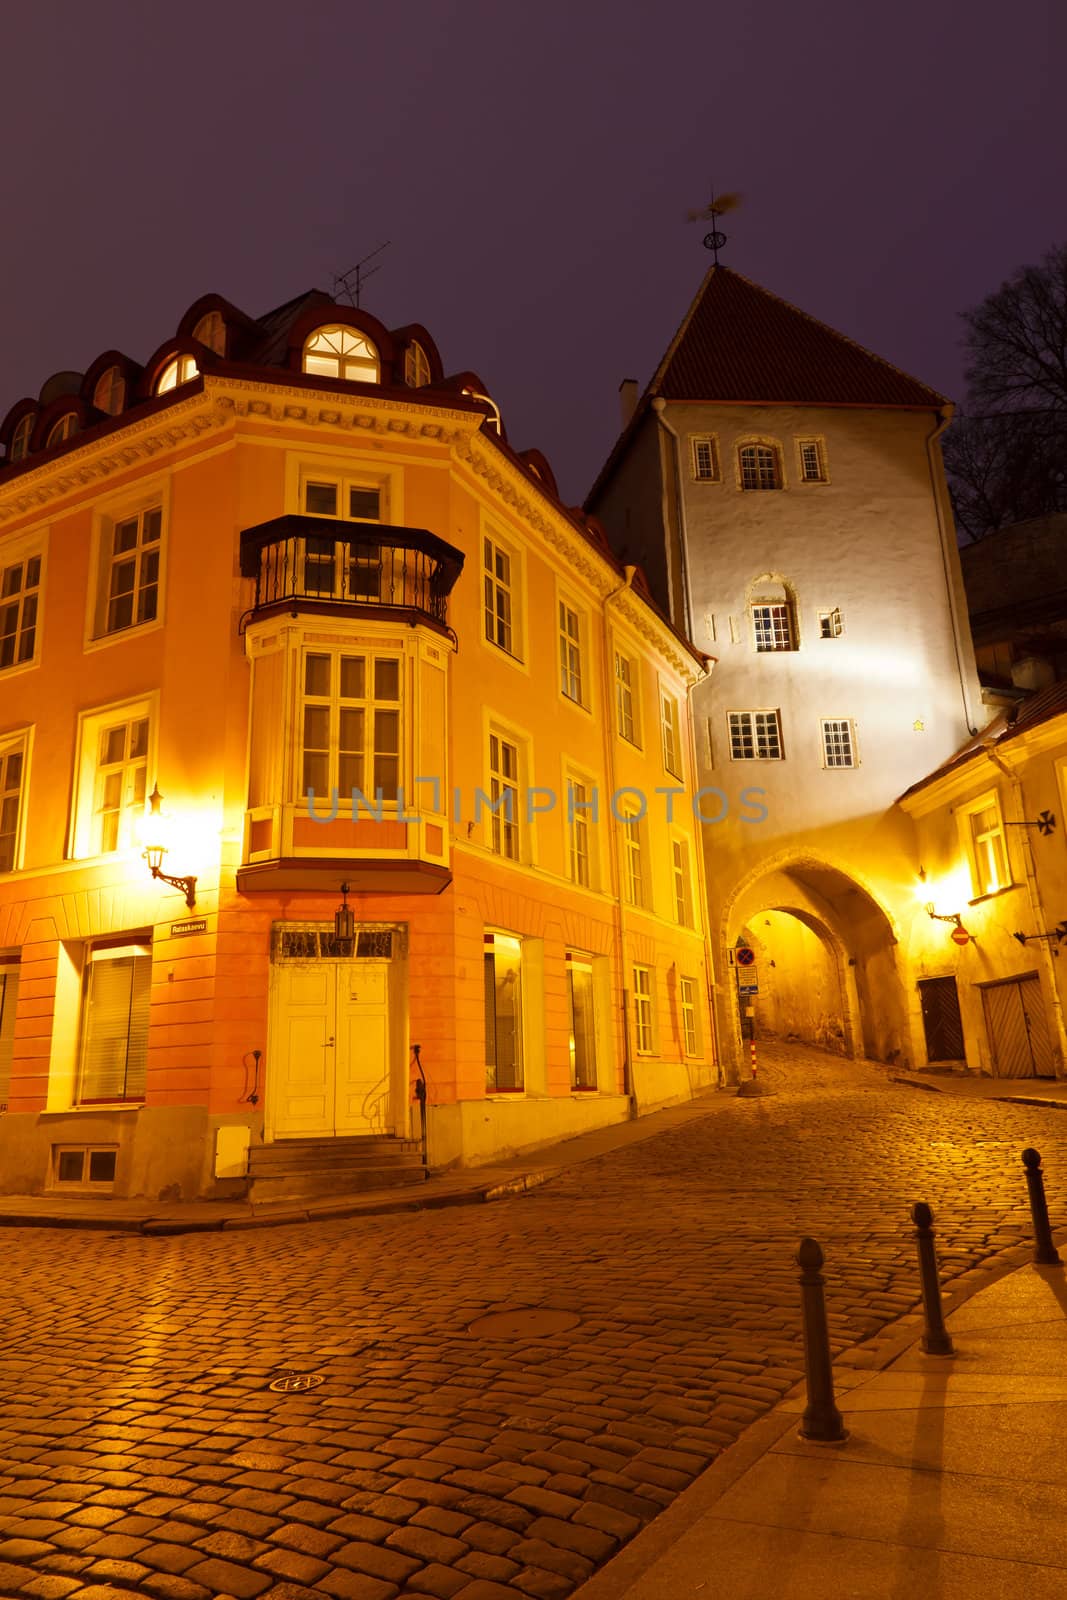 Night Street in the Old Town of Tallinn, Estonia